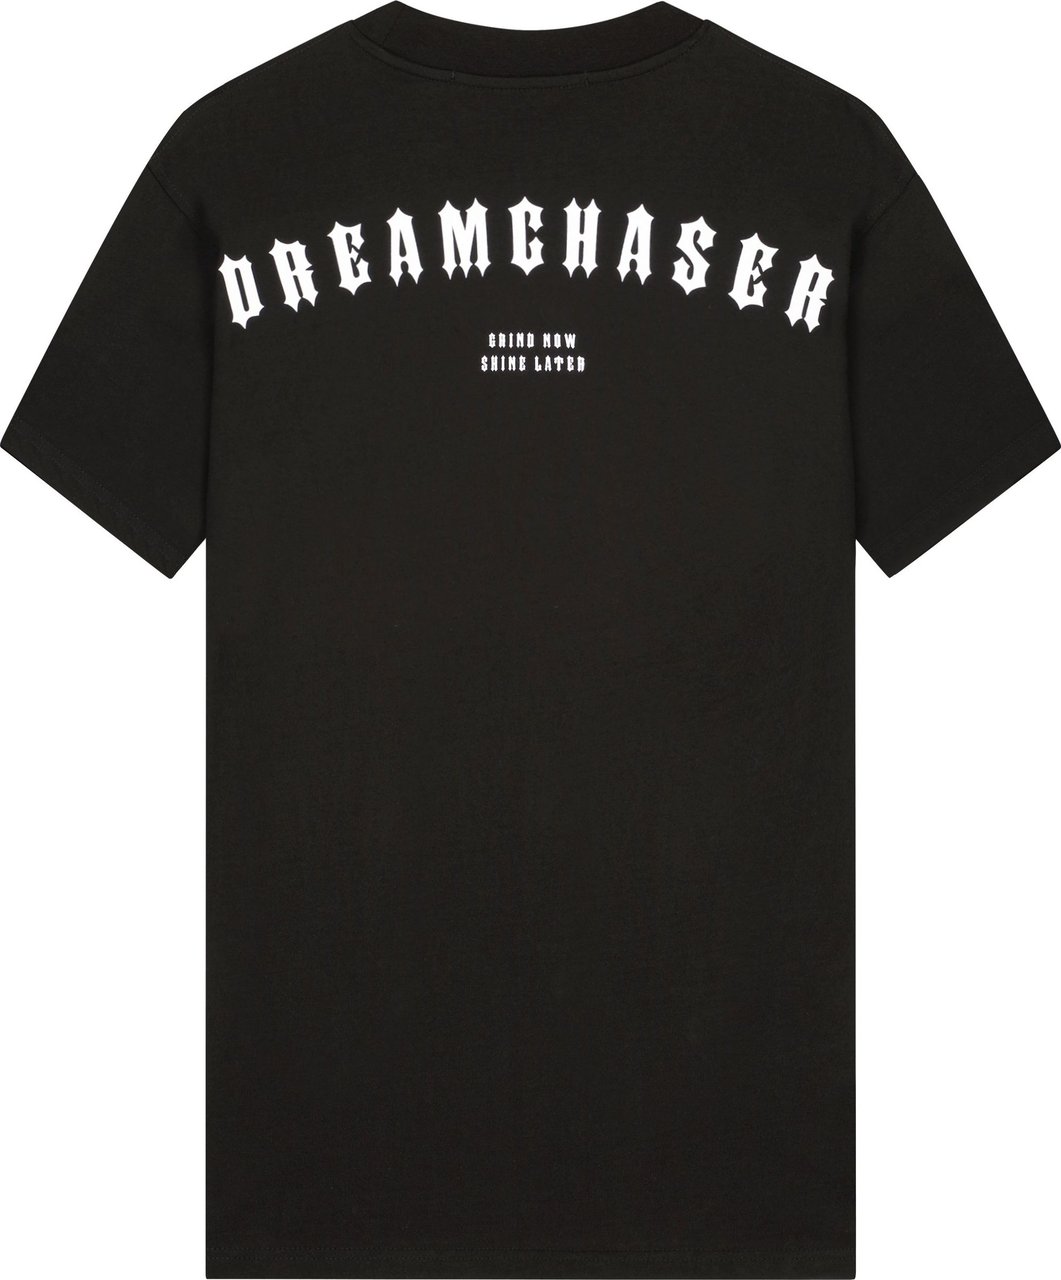 Malelions Oversized Dreamchaser T-Shirt-Black Zwart